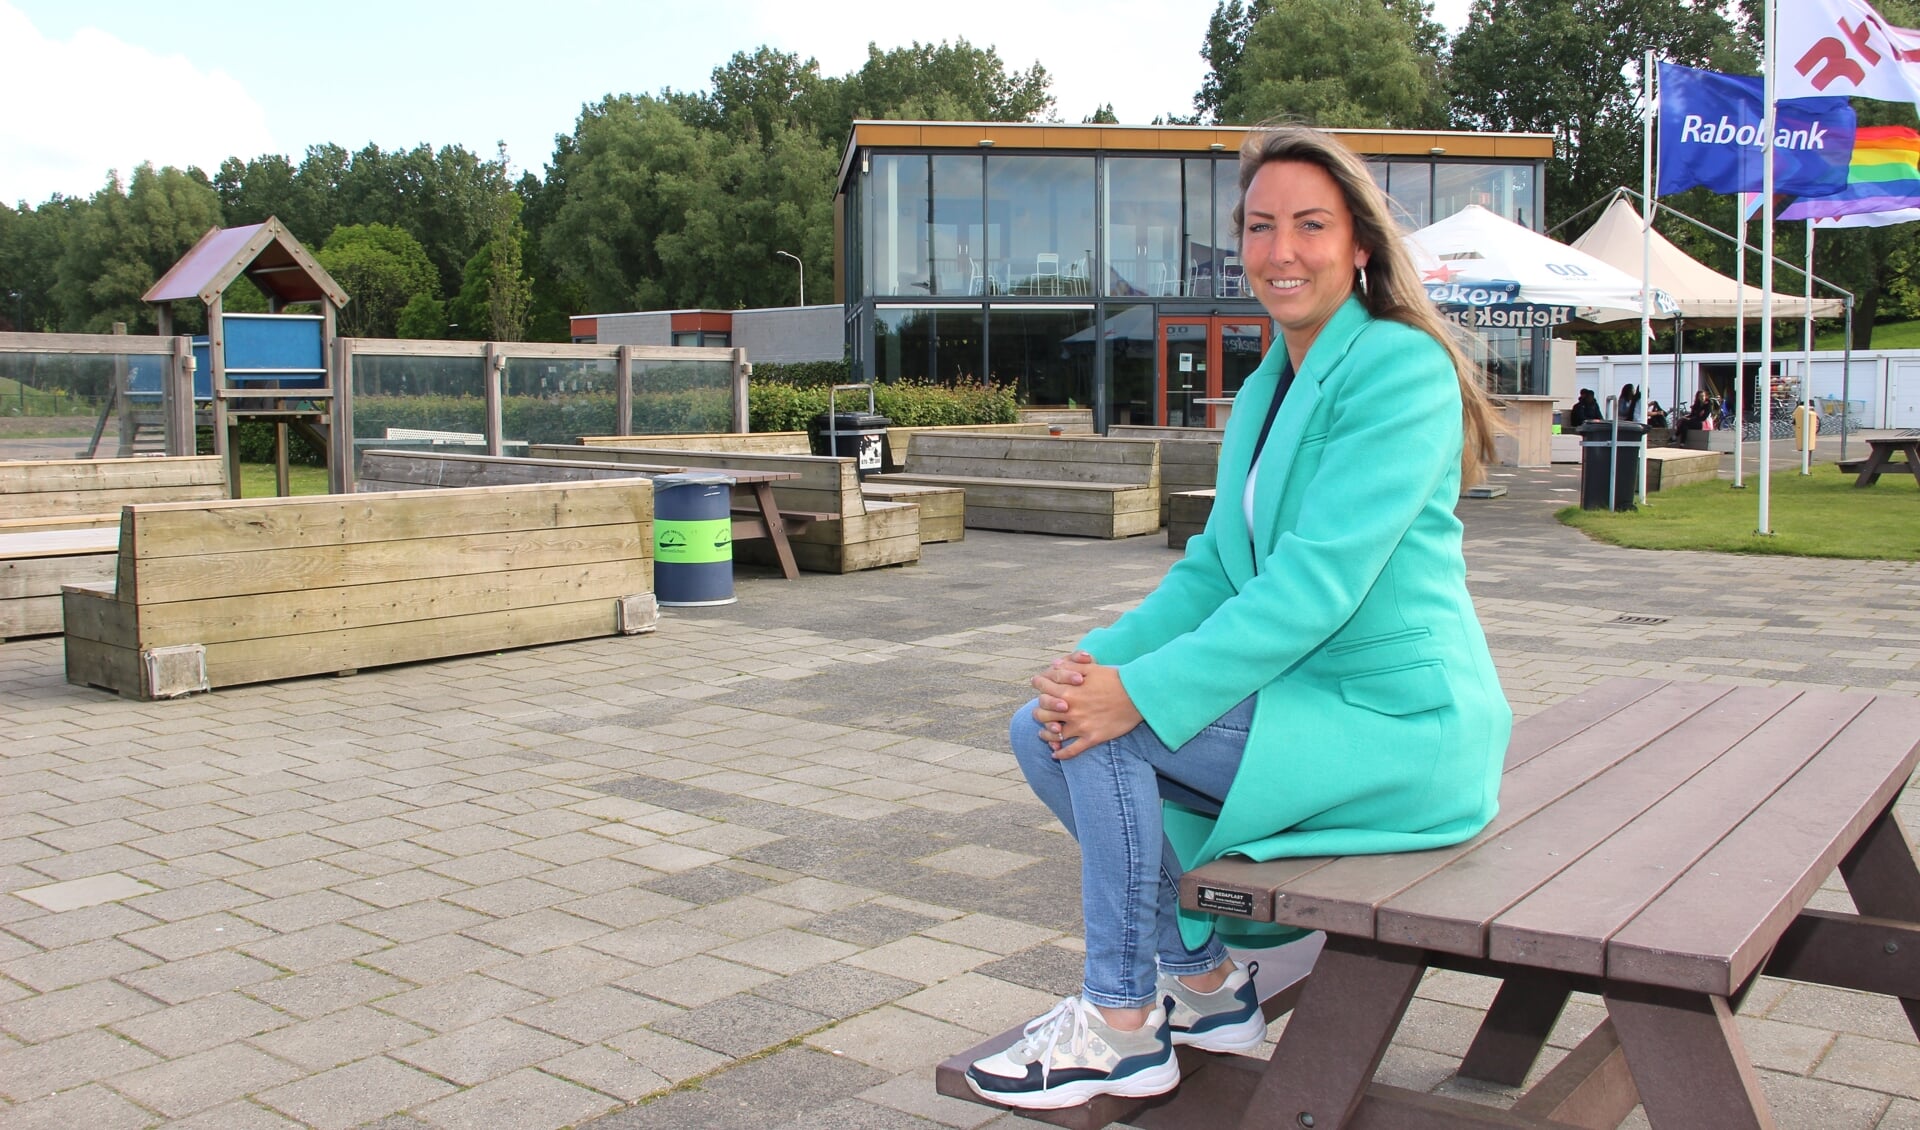 Rijswijks sportwethouder Larissa Bentvelzen: "Nu snel aan de slag om een multifunctionele accommodatie en toekomstbestendig sportcomplex te maken."